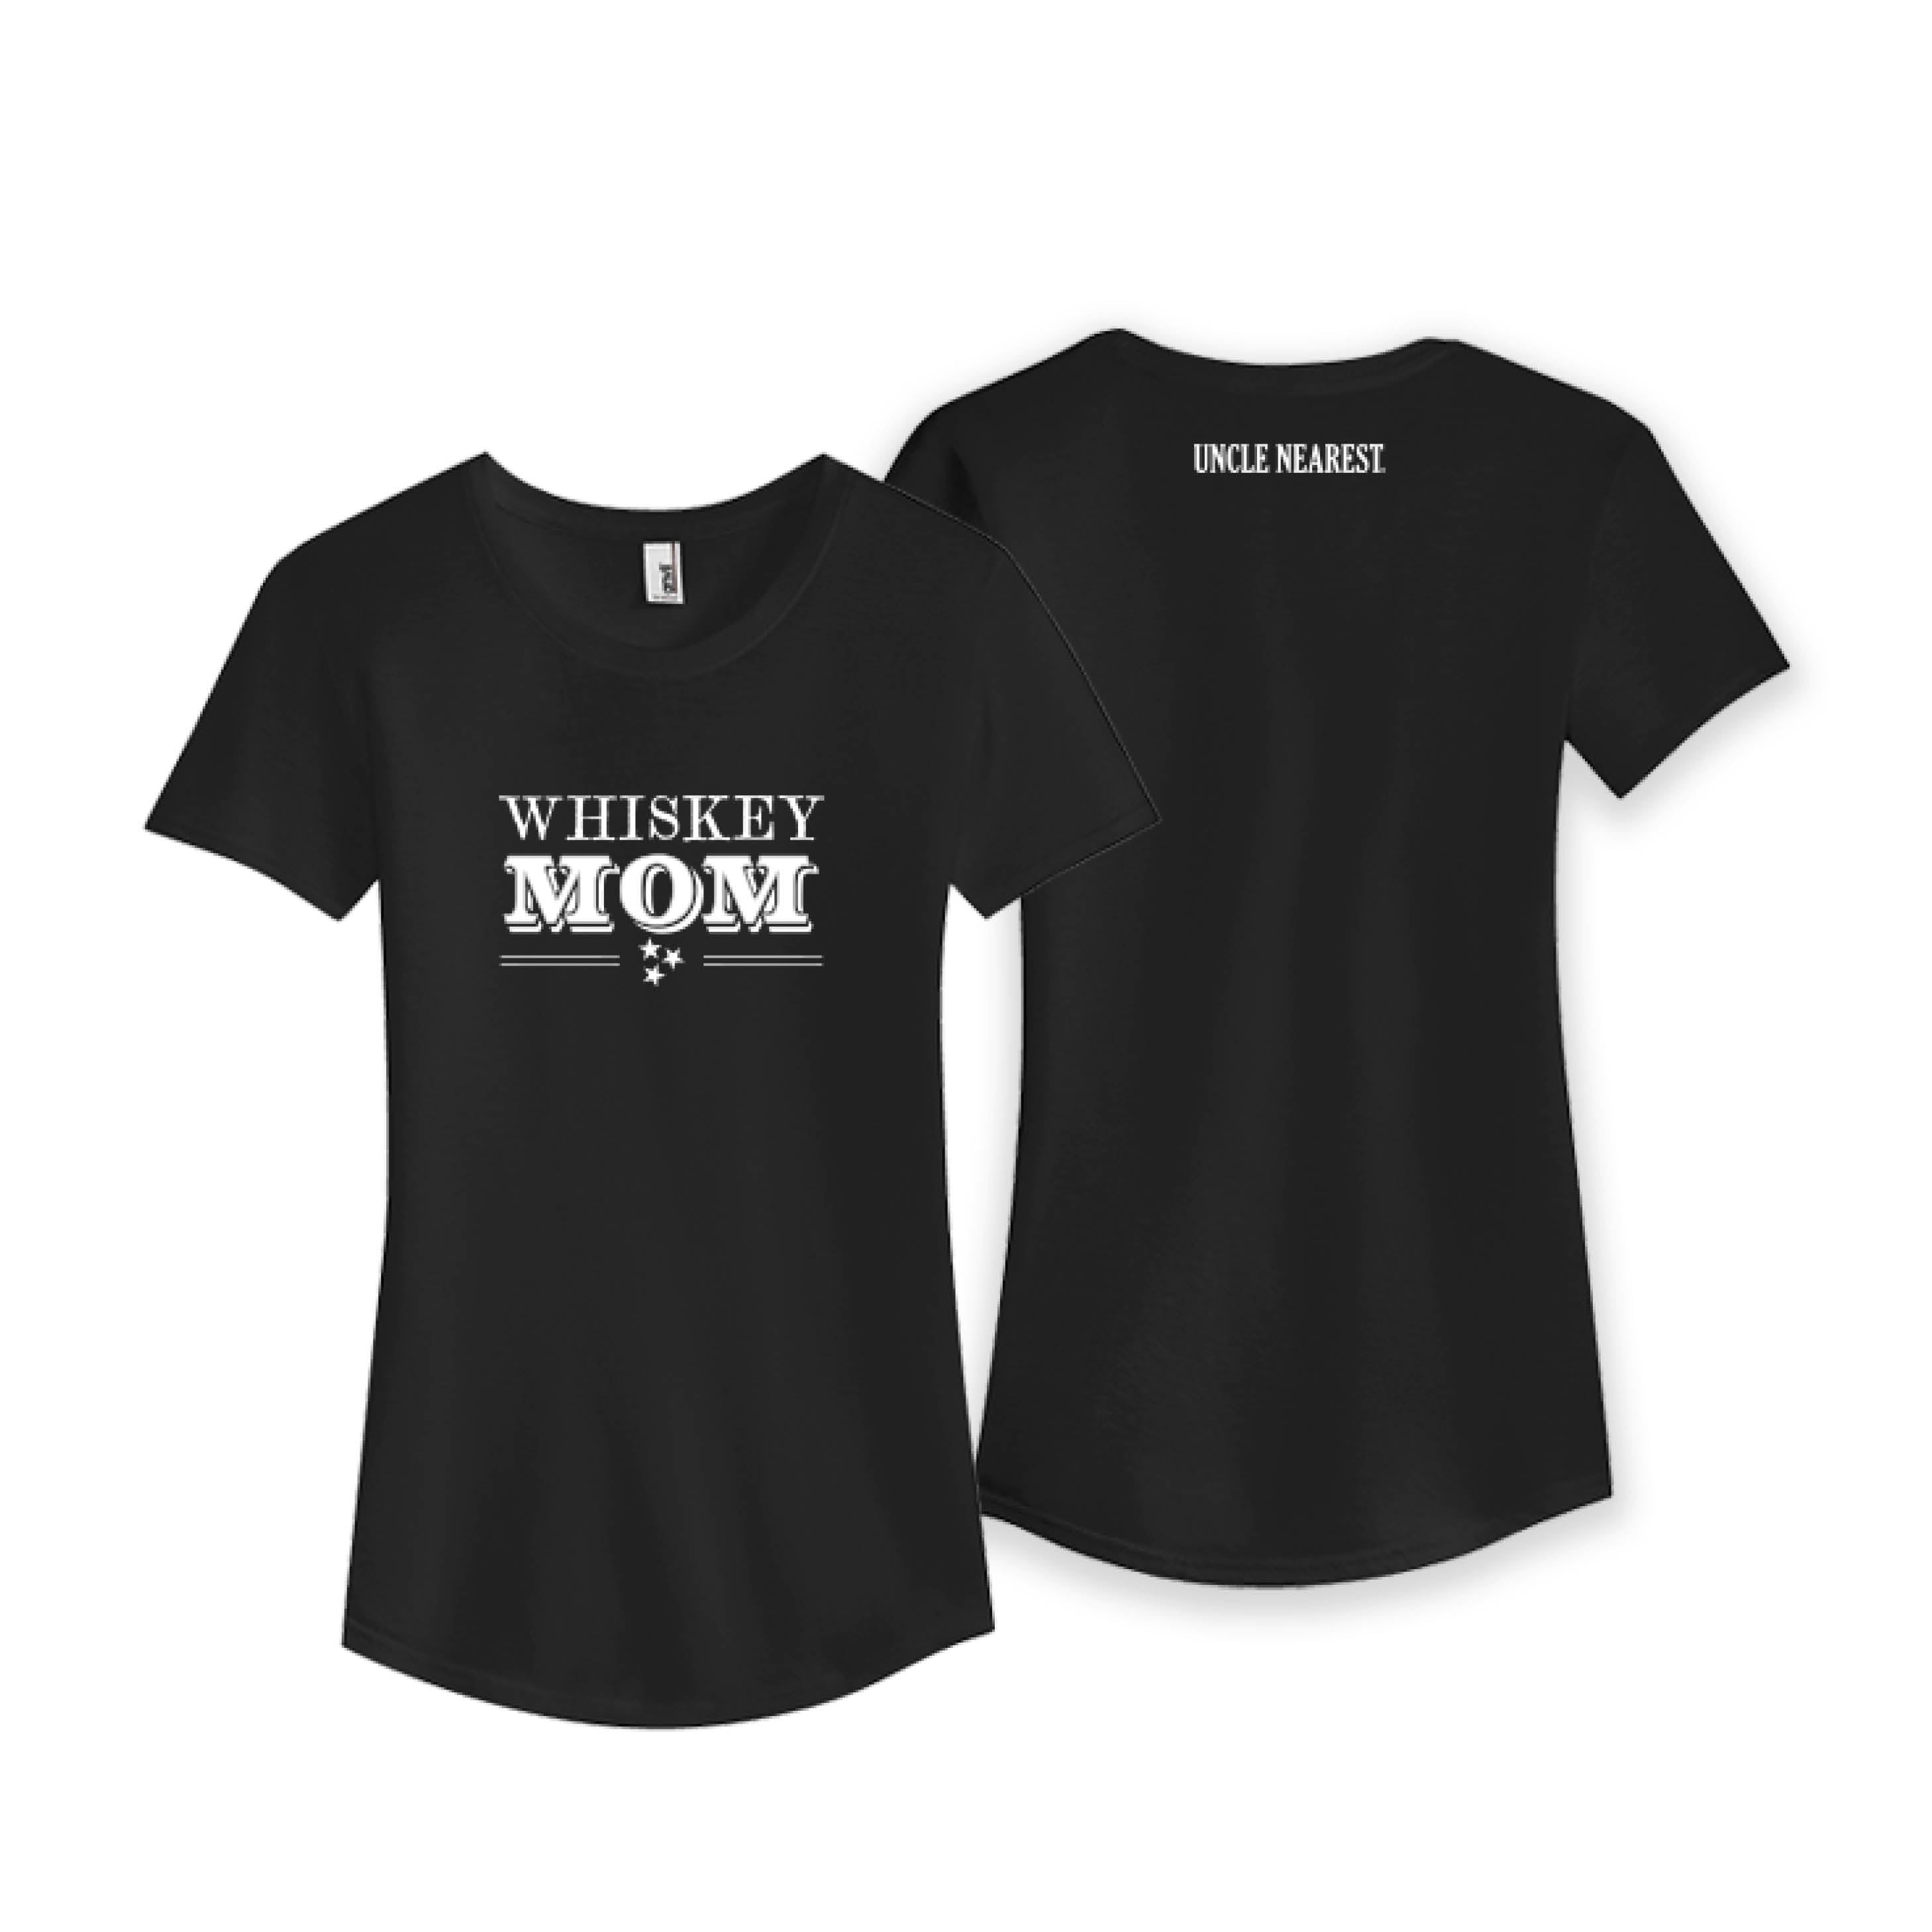 Ladies Whiskey MOM Black T-Shirt